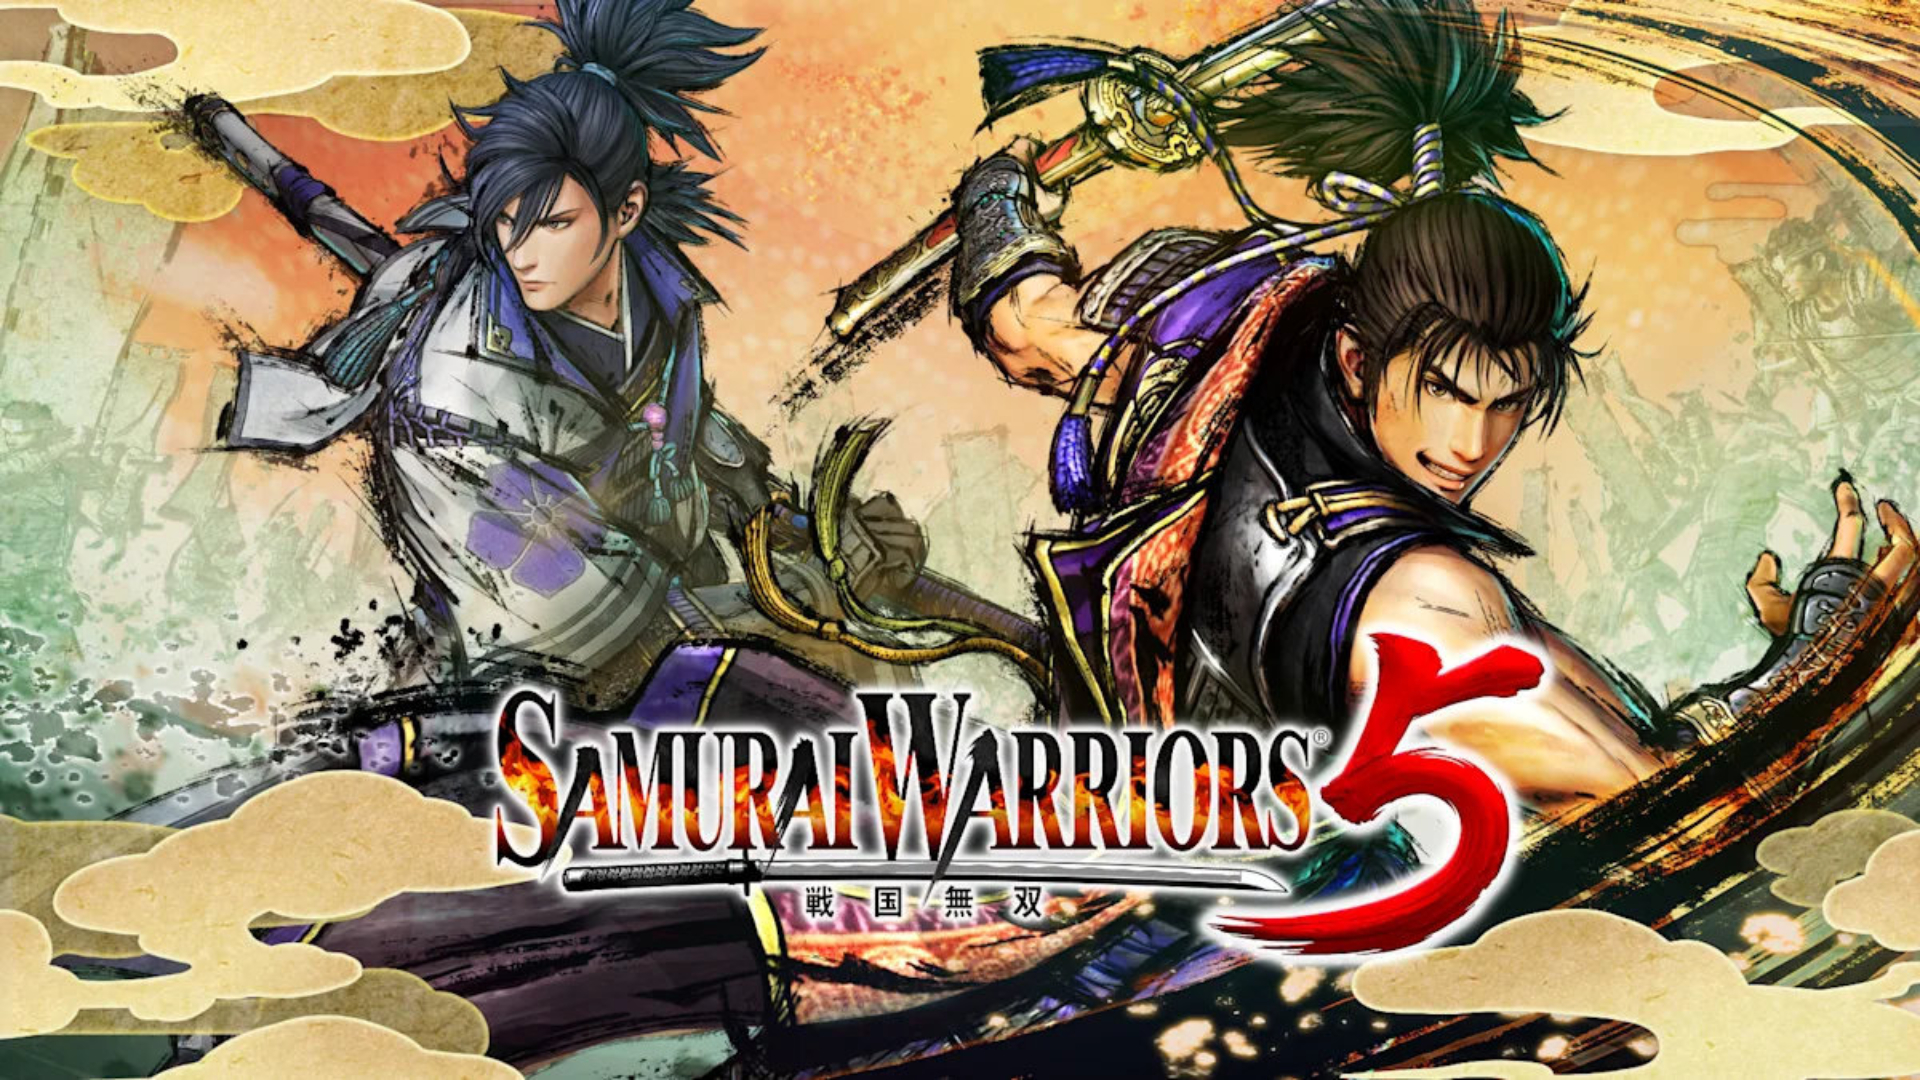 Juegos de samuráis guerreros samuráis 5